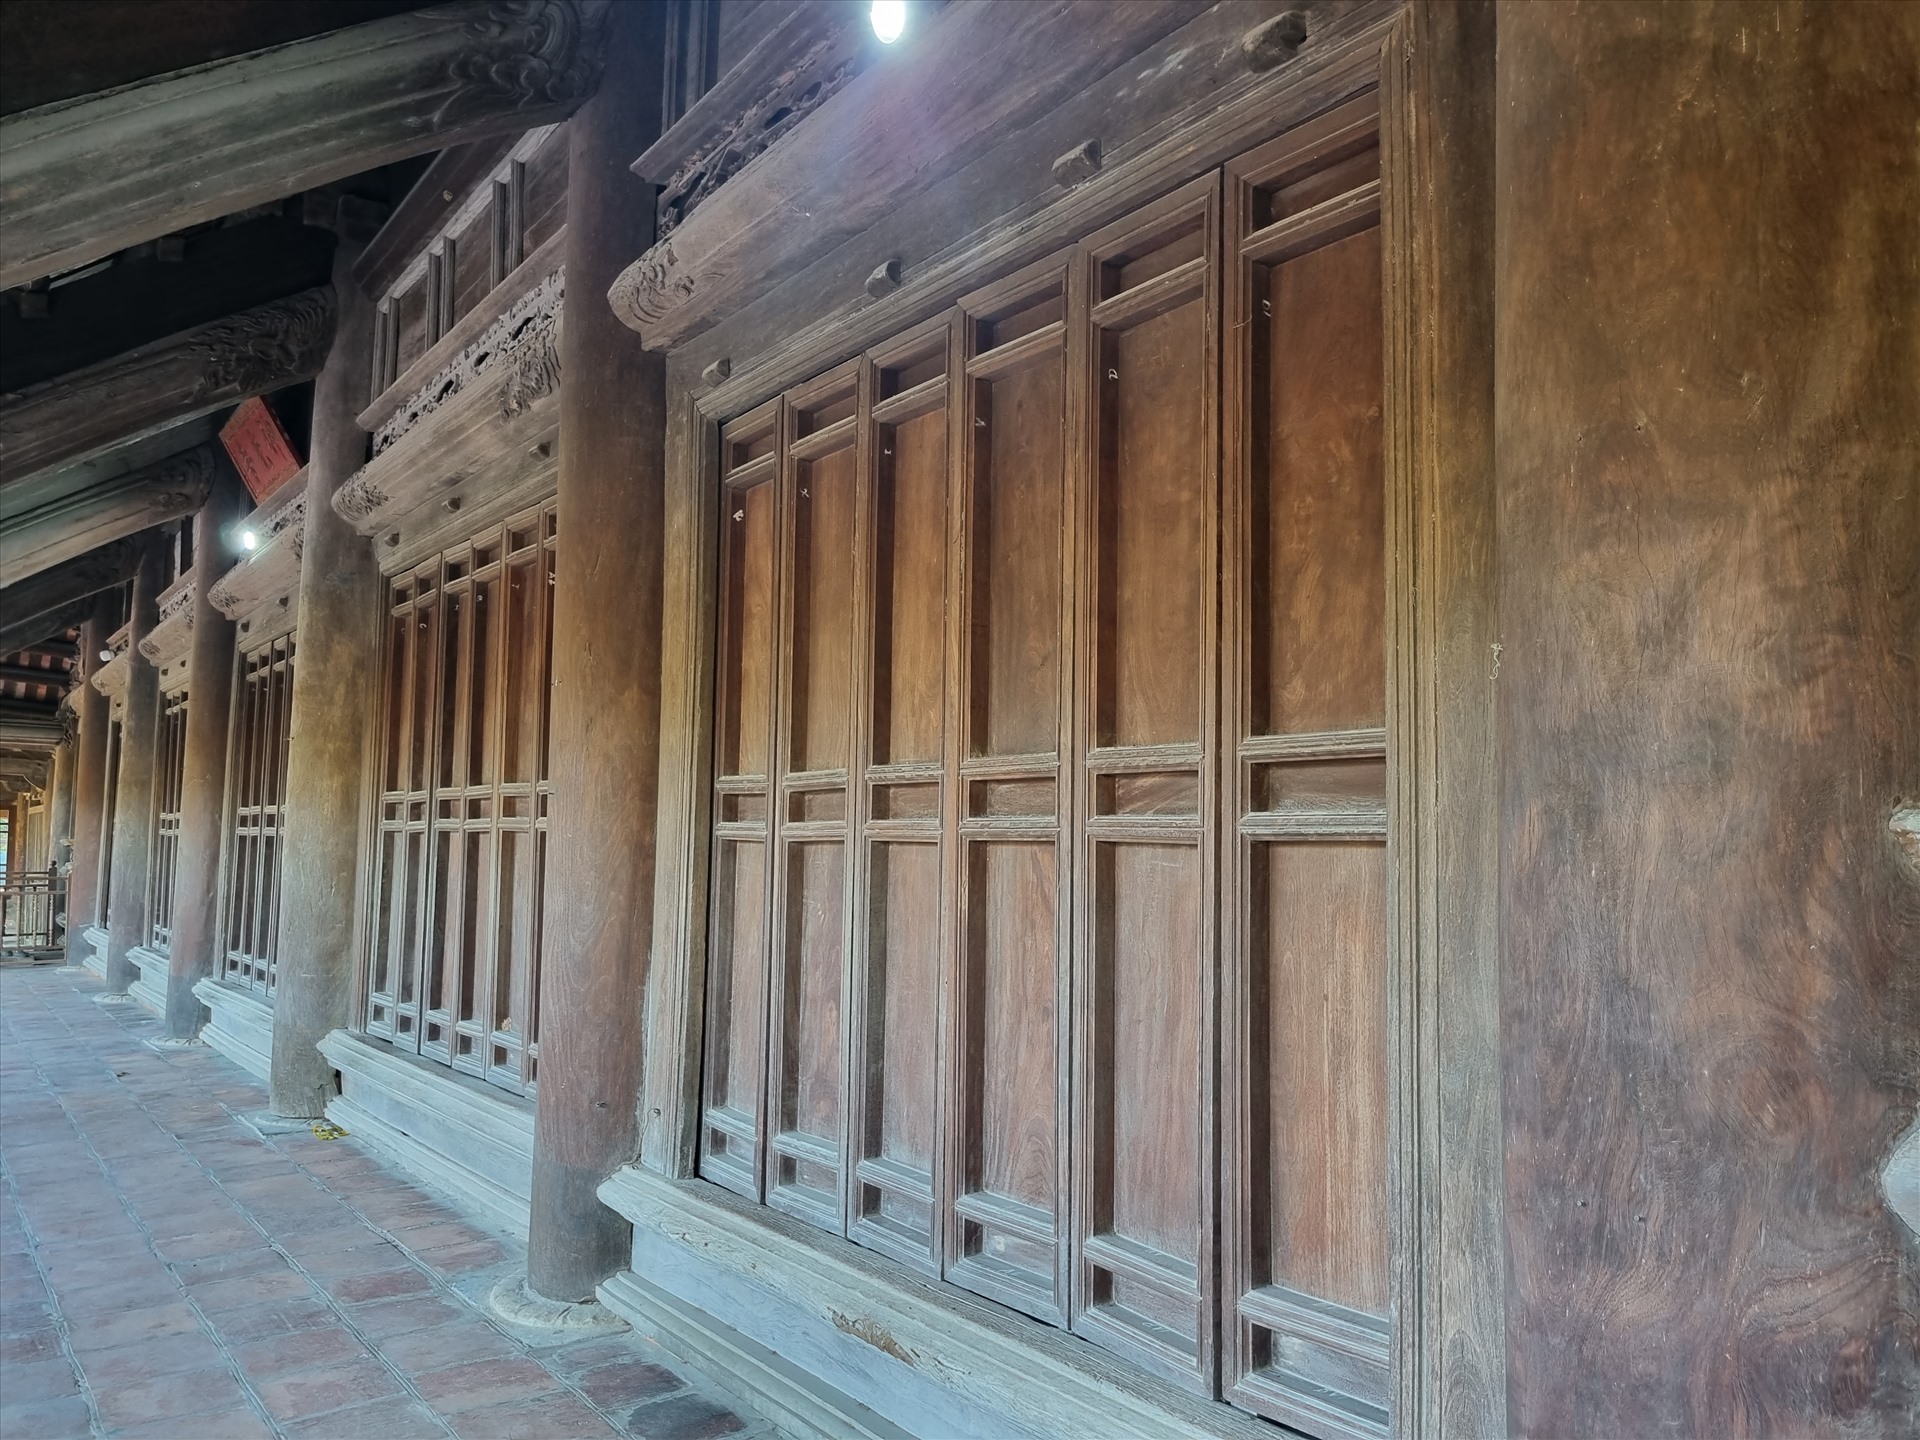 Chiêm ngưỡng kiến trúc ngôi chùa gỗ lim gần 400 tuổi ở Thái Bình